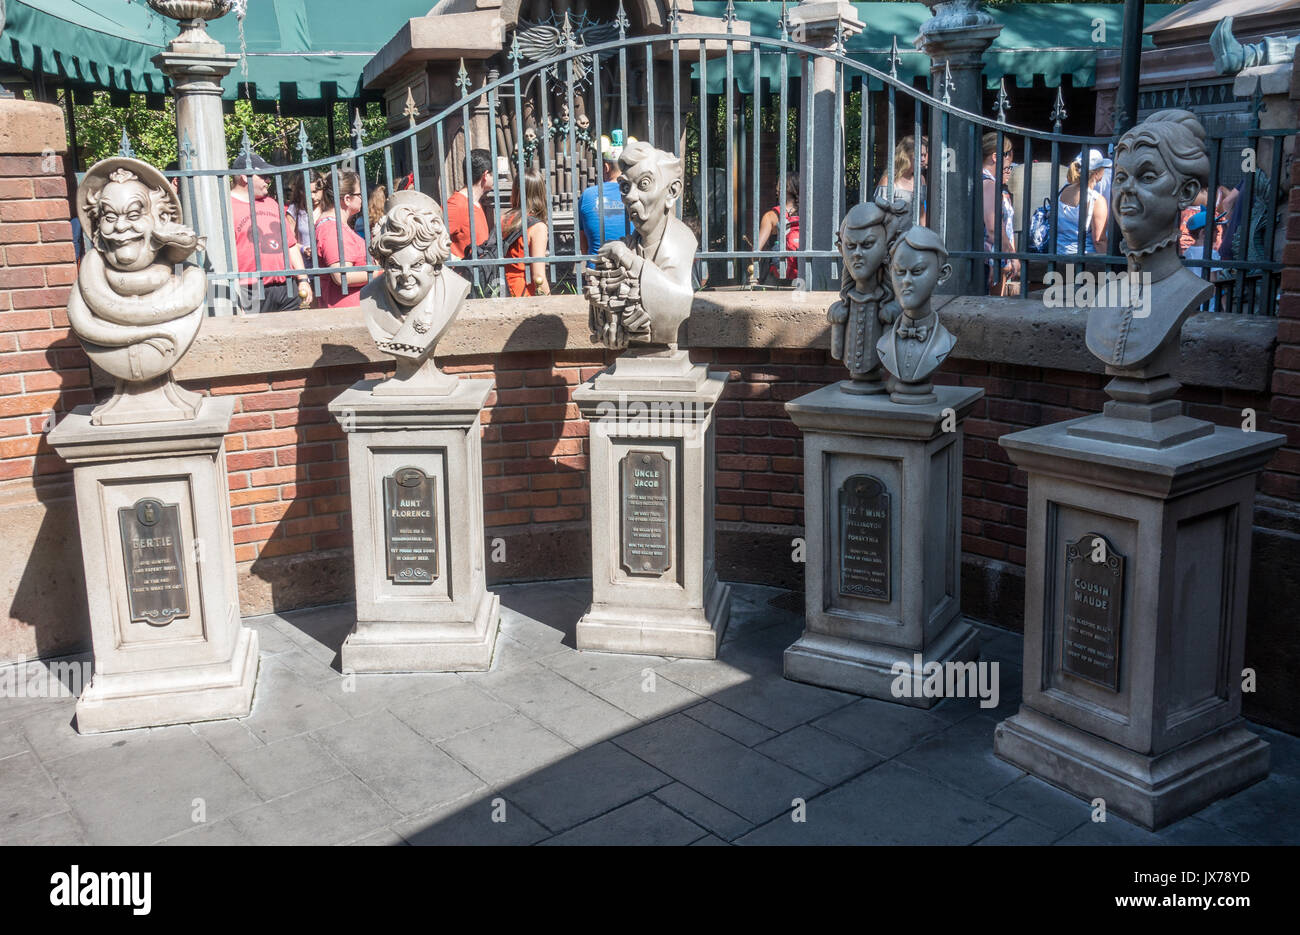 Dread bustes de la famille dans la file d'attente pour le manoir hanté dans le royaume magique, Walt Disney World, Orlando, Floride. Banque D'Images